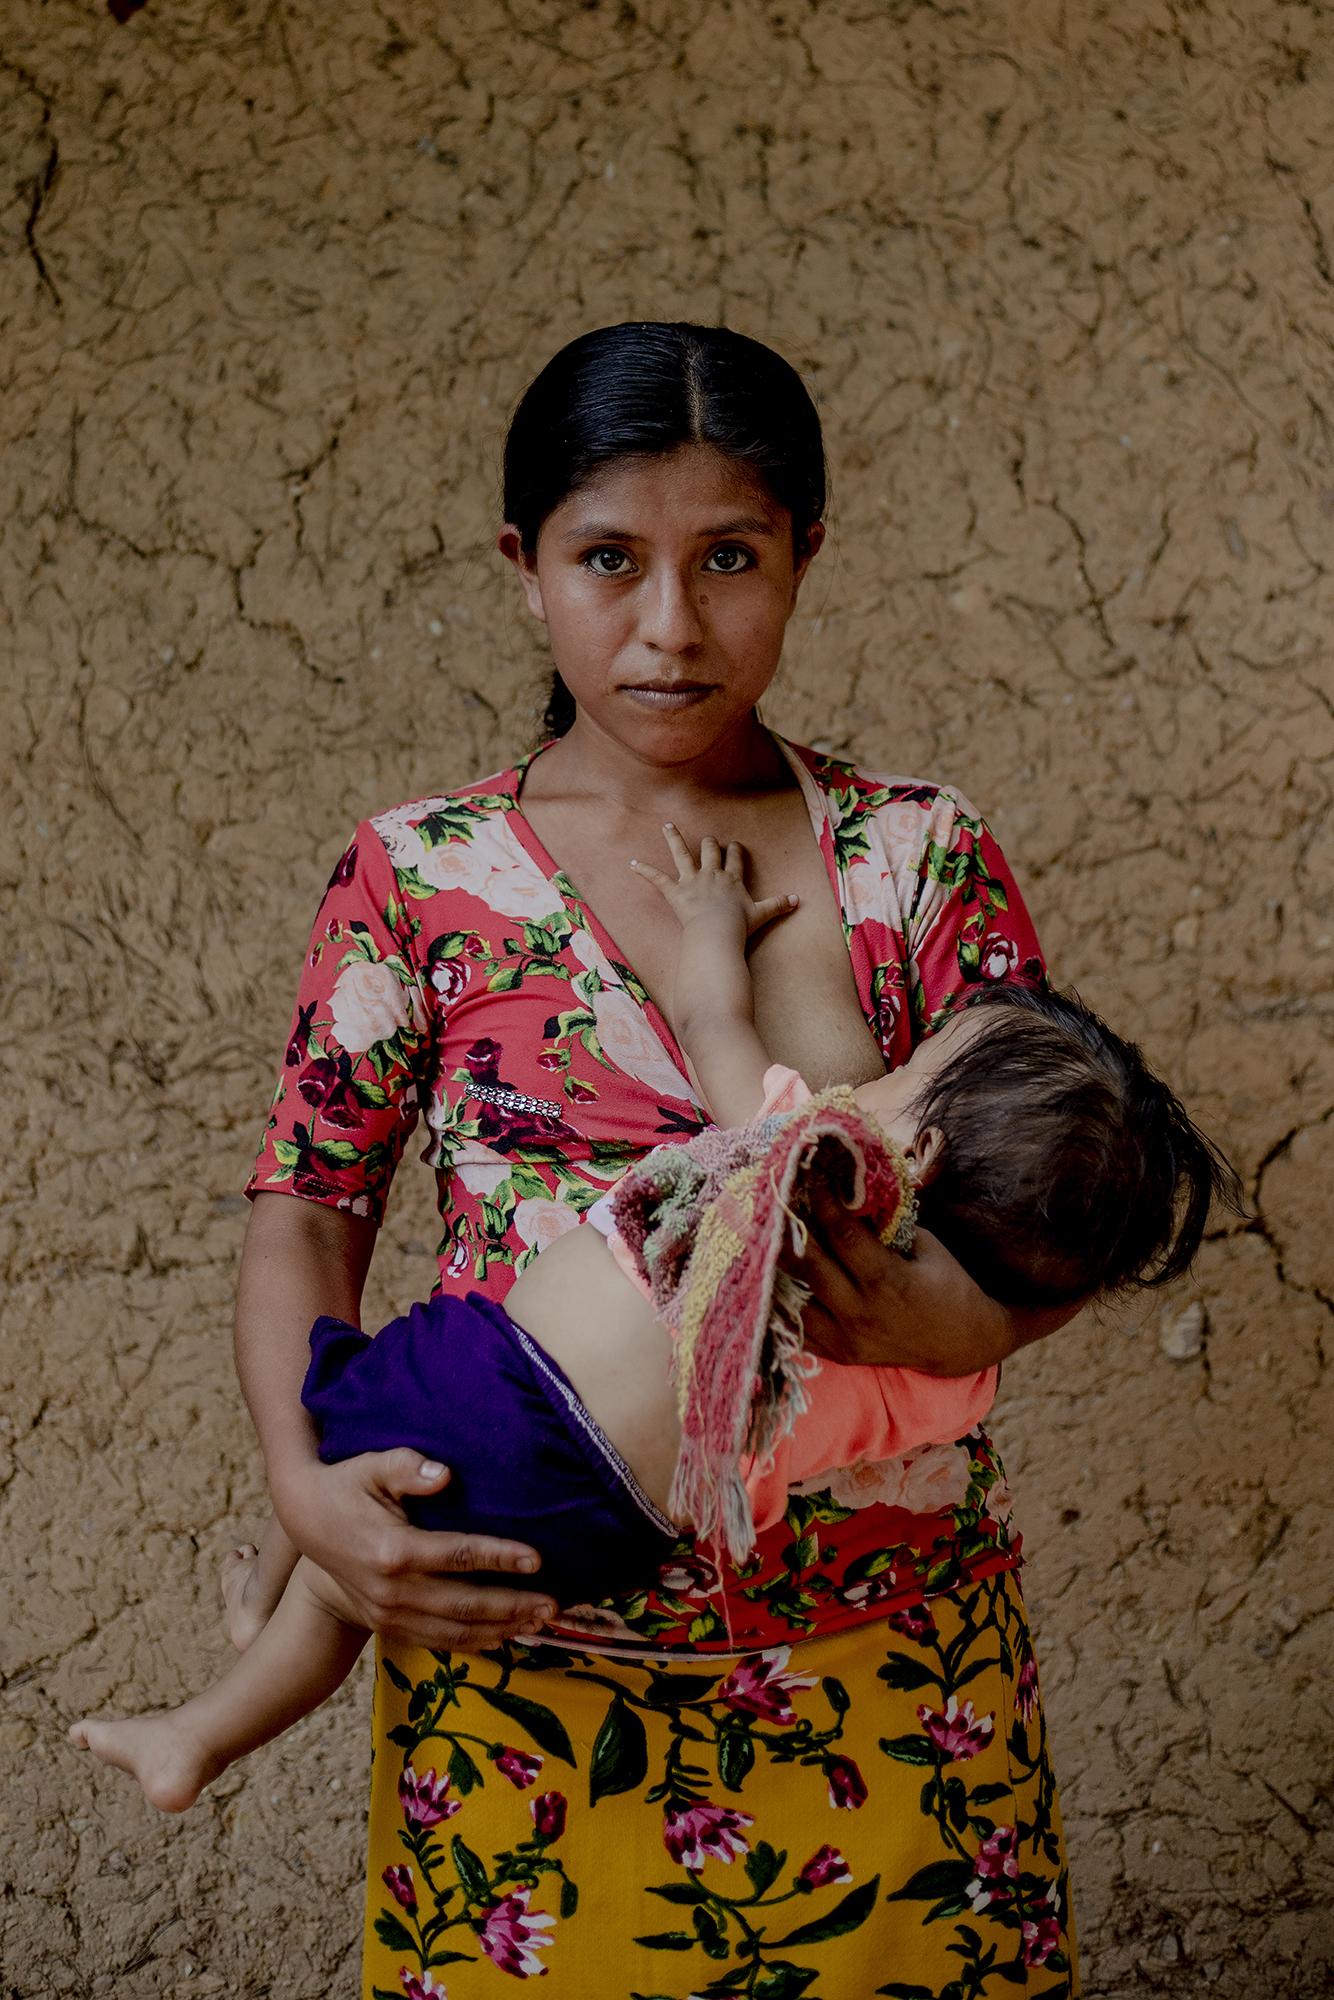 María García tiene 23 años. Posa con su hijo de once meses, al que han diagnosticado desnutrición en la clínica de Camotán. “Me han dicho que debo darle vitaminas”, dice. También quisiera irse a México, o a Estados Unidos, pero dice que es demasiado pobre para migrar. Foto: Fred Ramos.